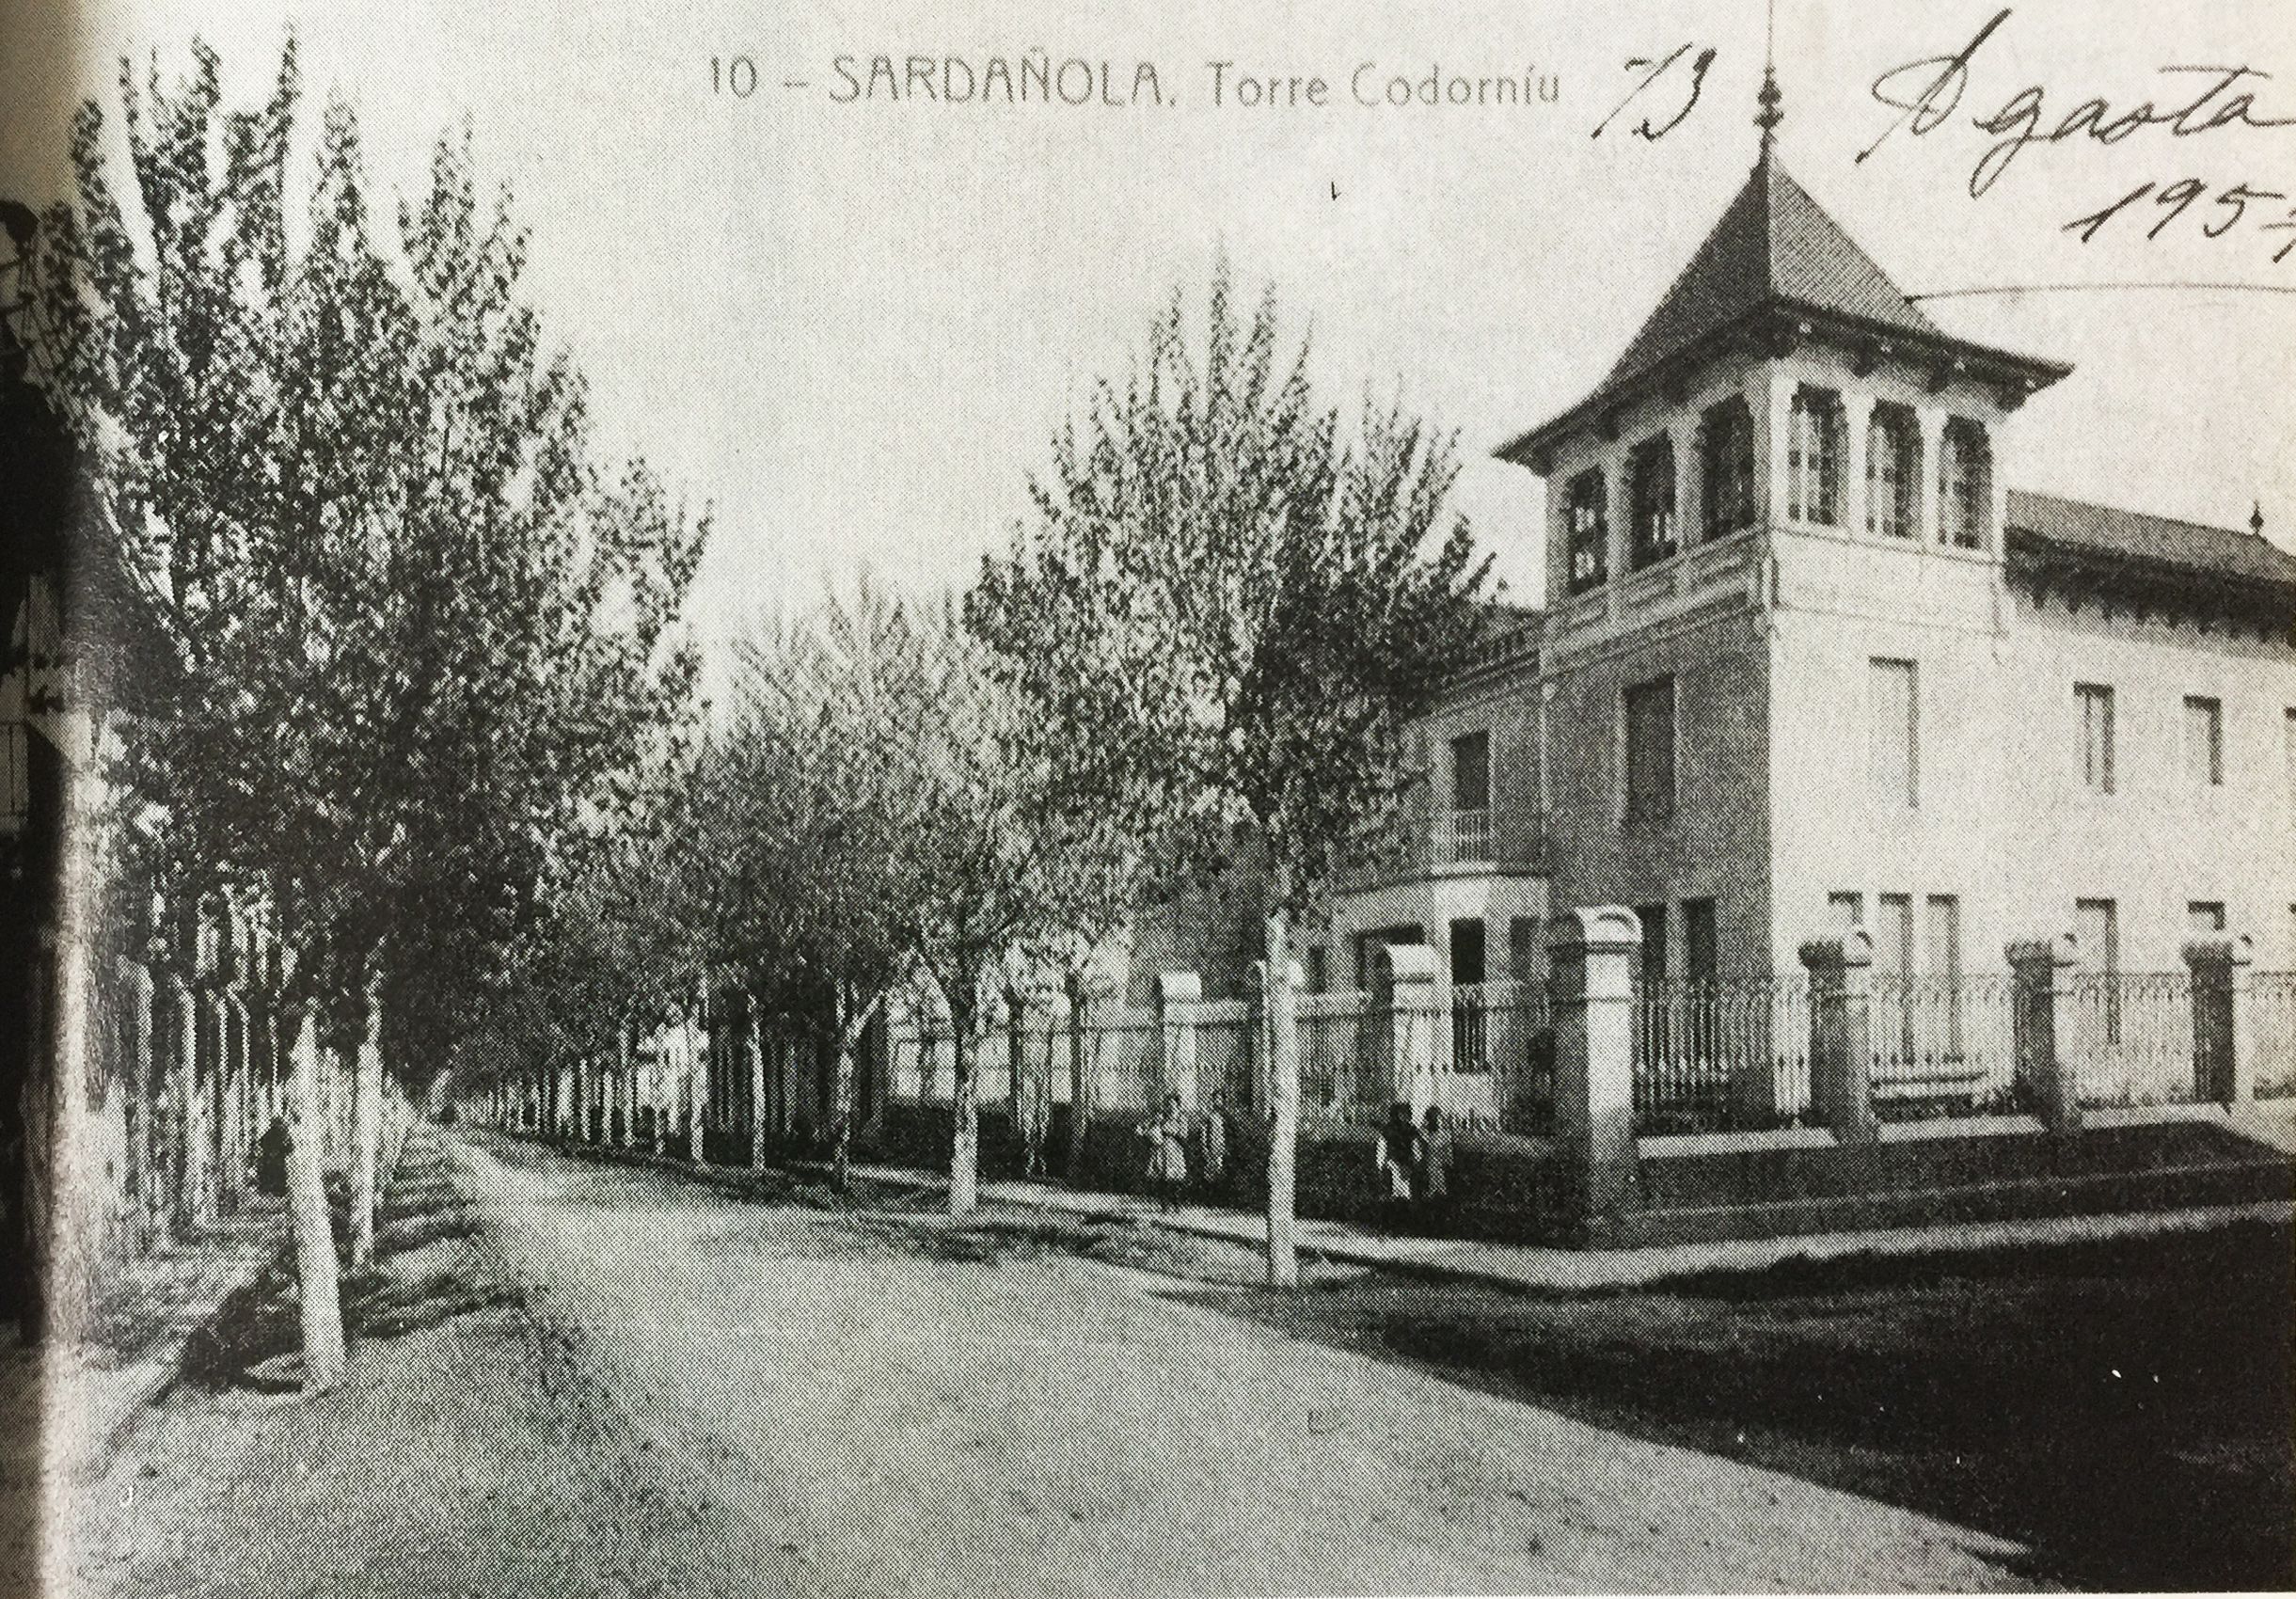 La Torre Cordorniu estava ubicada als carrers Sant Martí i Santiago. (TOT Cerdanyola, 281) - Cedida per la Família Mata Farell, reproduïda per Escursell